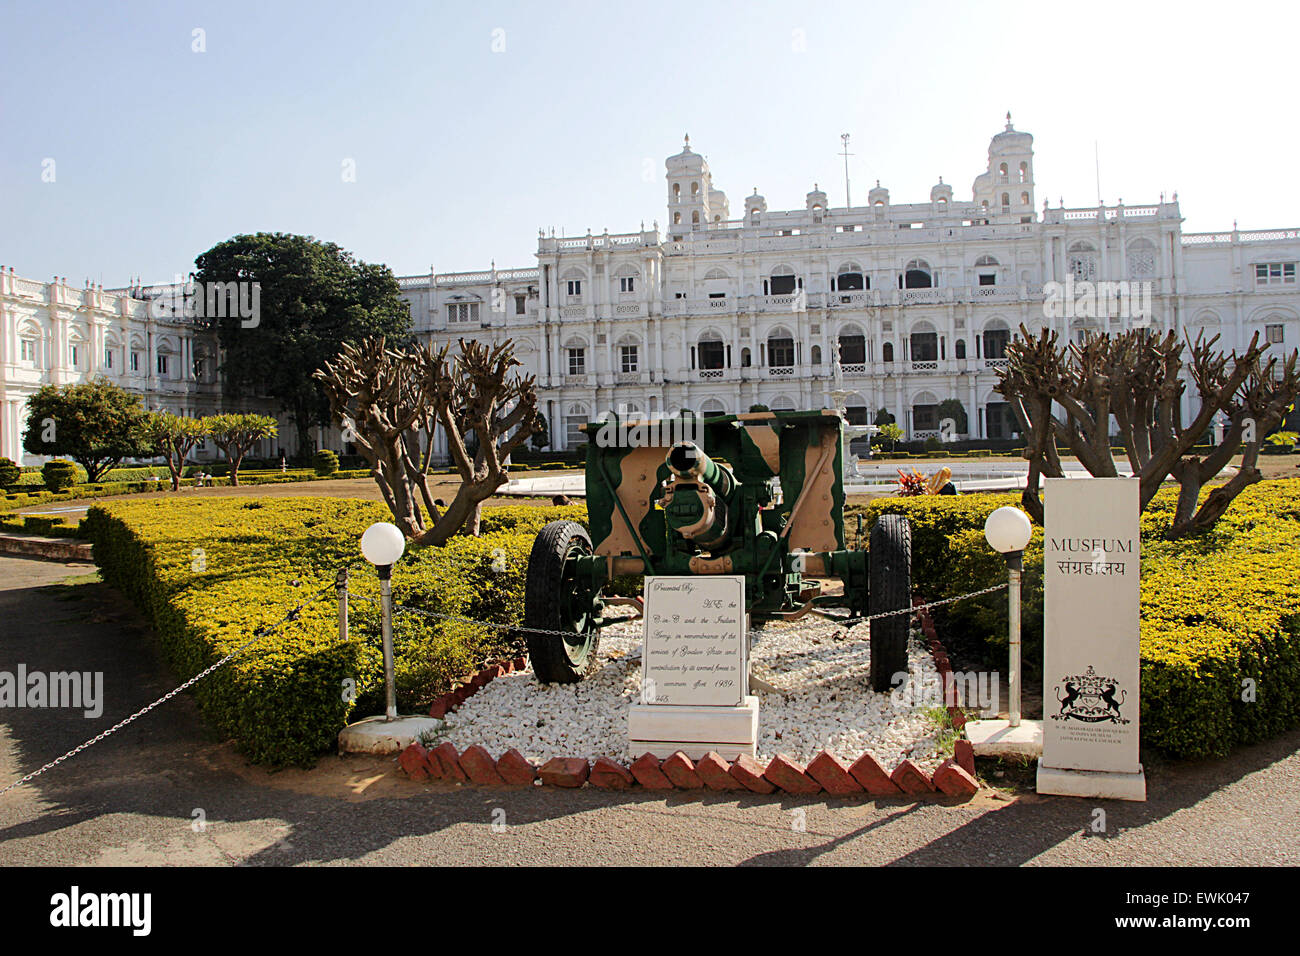 View of Jaivilas Palace Museum, Gwalior, Madhya Pradesh, India, Asia Stock Photo